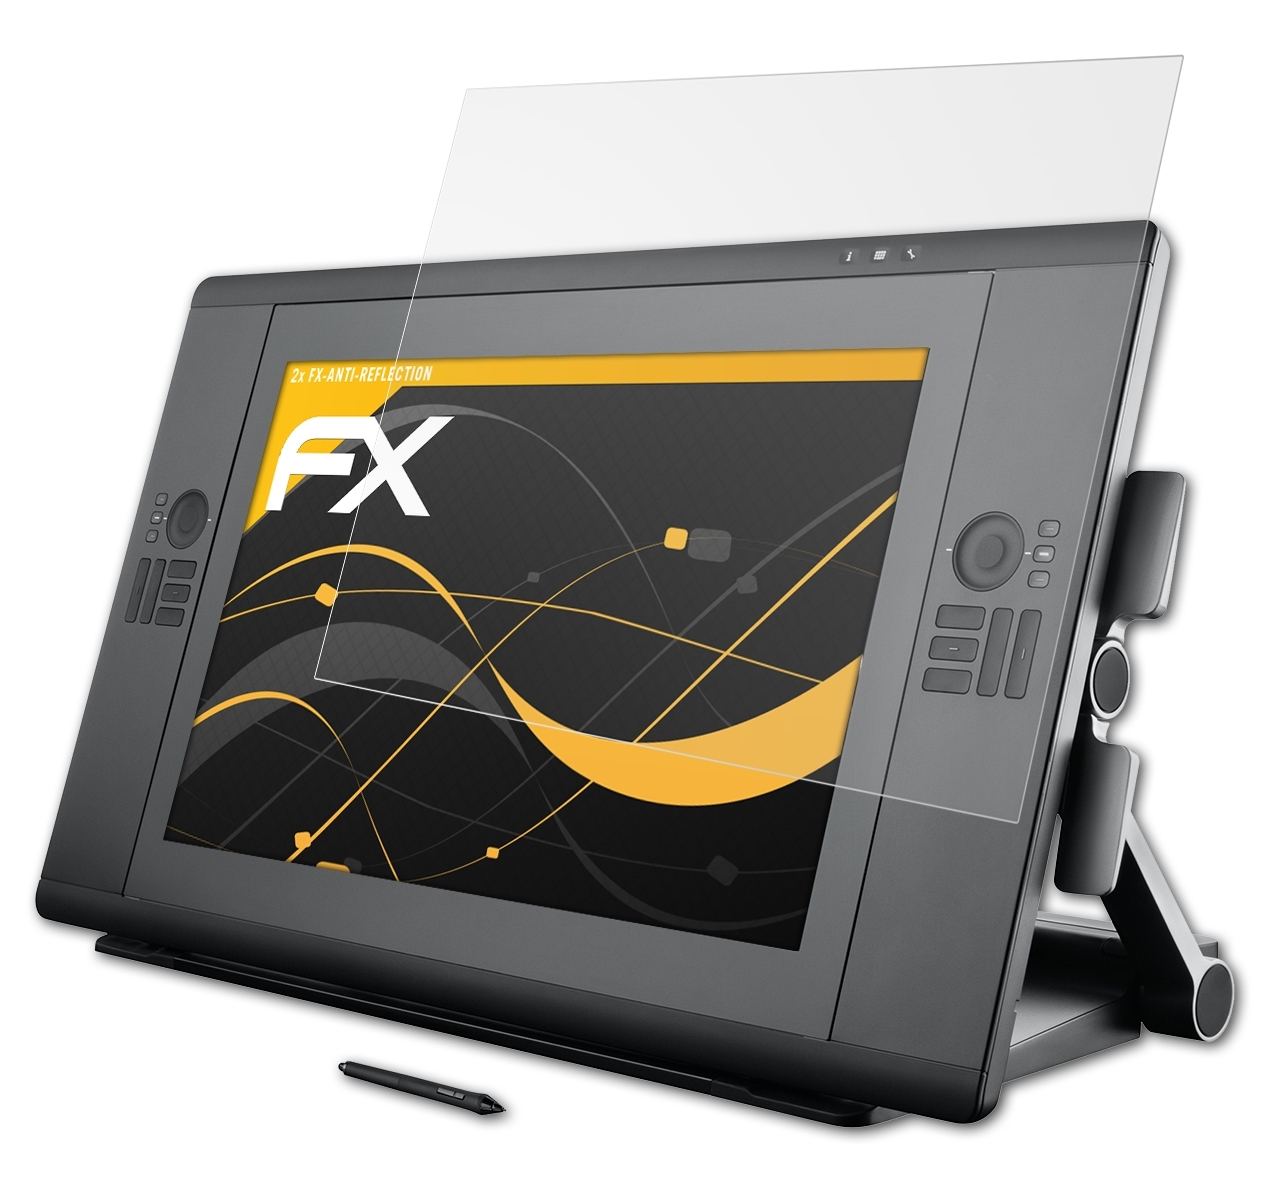 ATFOLIX 2x Wacom 24 touch) HD CINTIQ FX-Antireflex Displayschutz(für